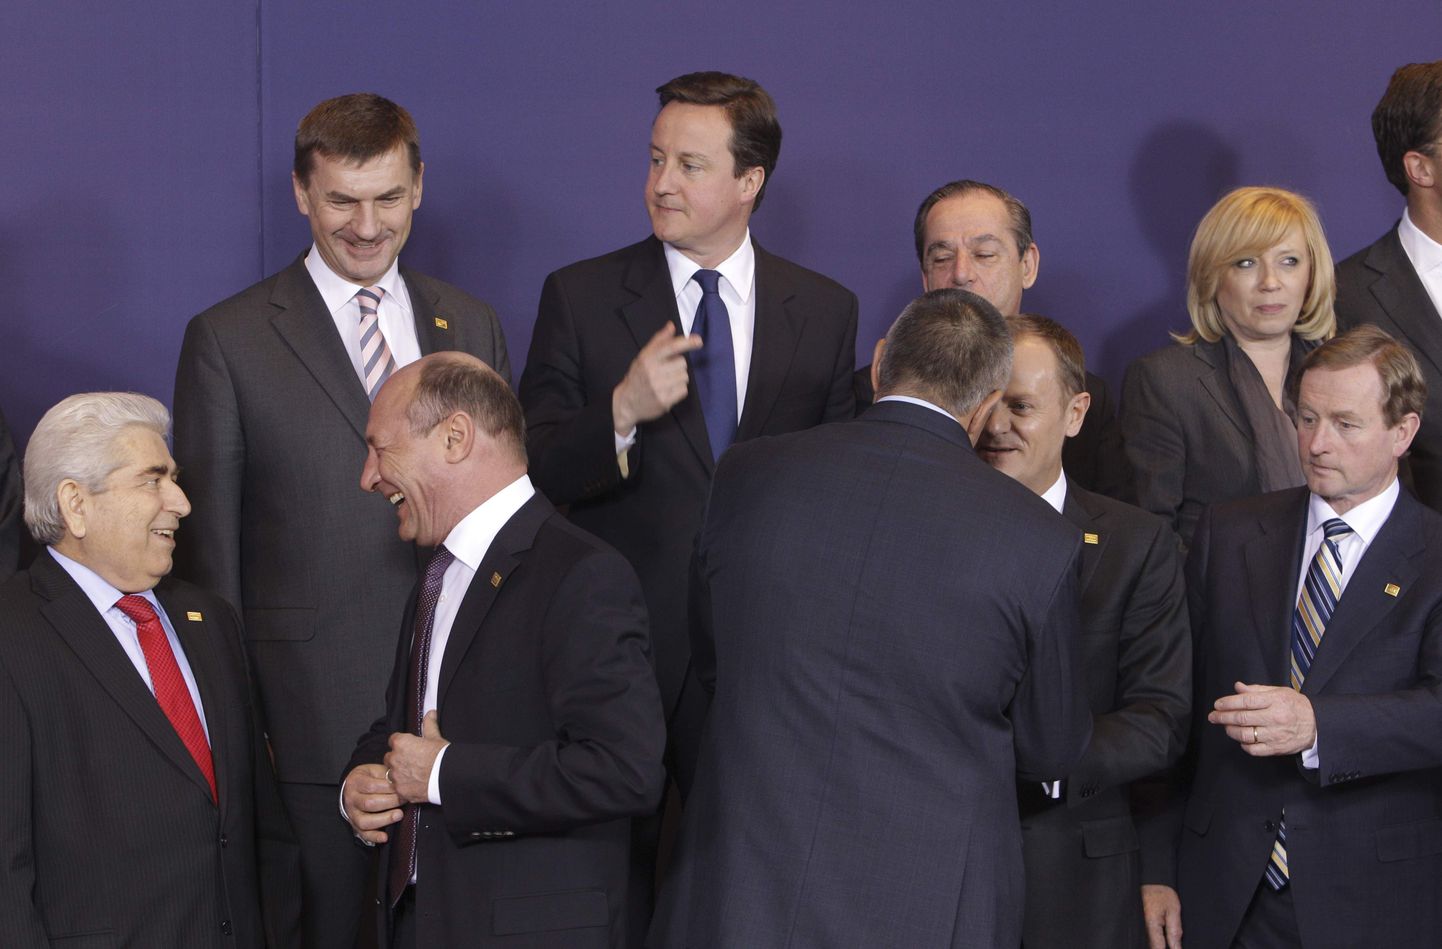 Euroliidu riikide liidrid Euroopa Ülemkogu ühispildil. Eesti peaminister Andrus Ansip seisab Briti valitsusjuhi David Cameroni kõrval.